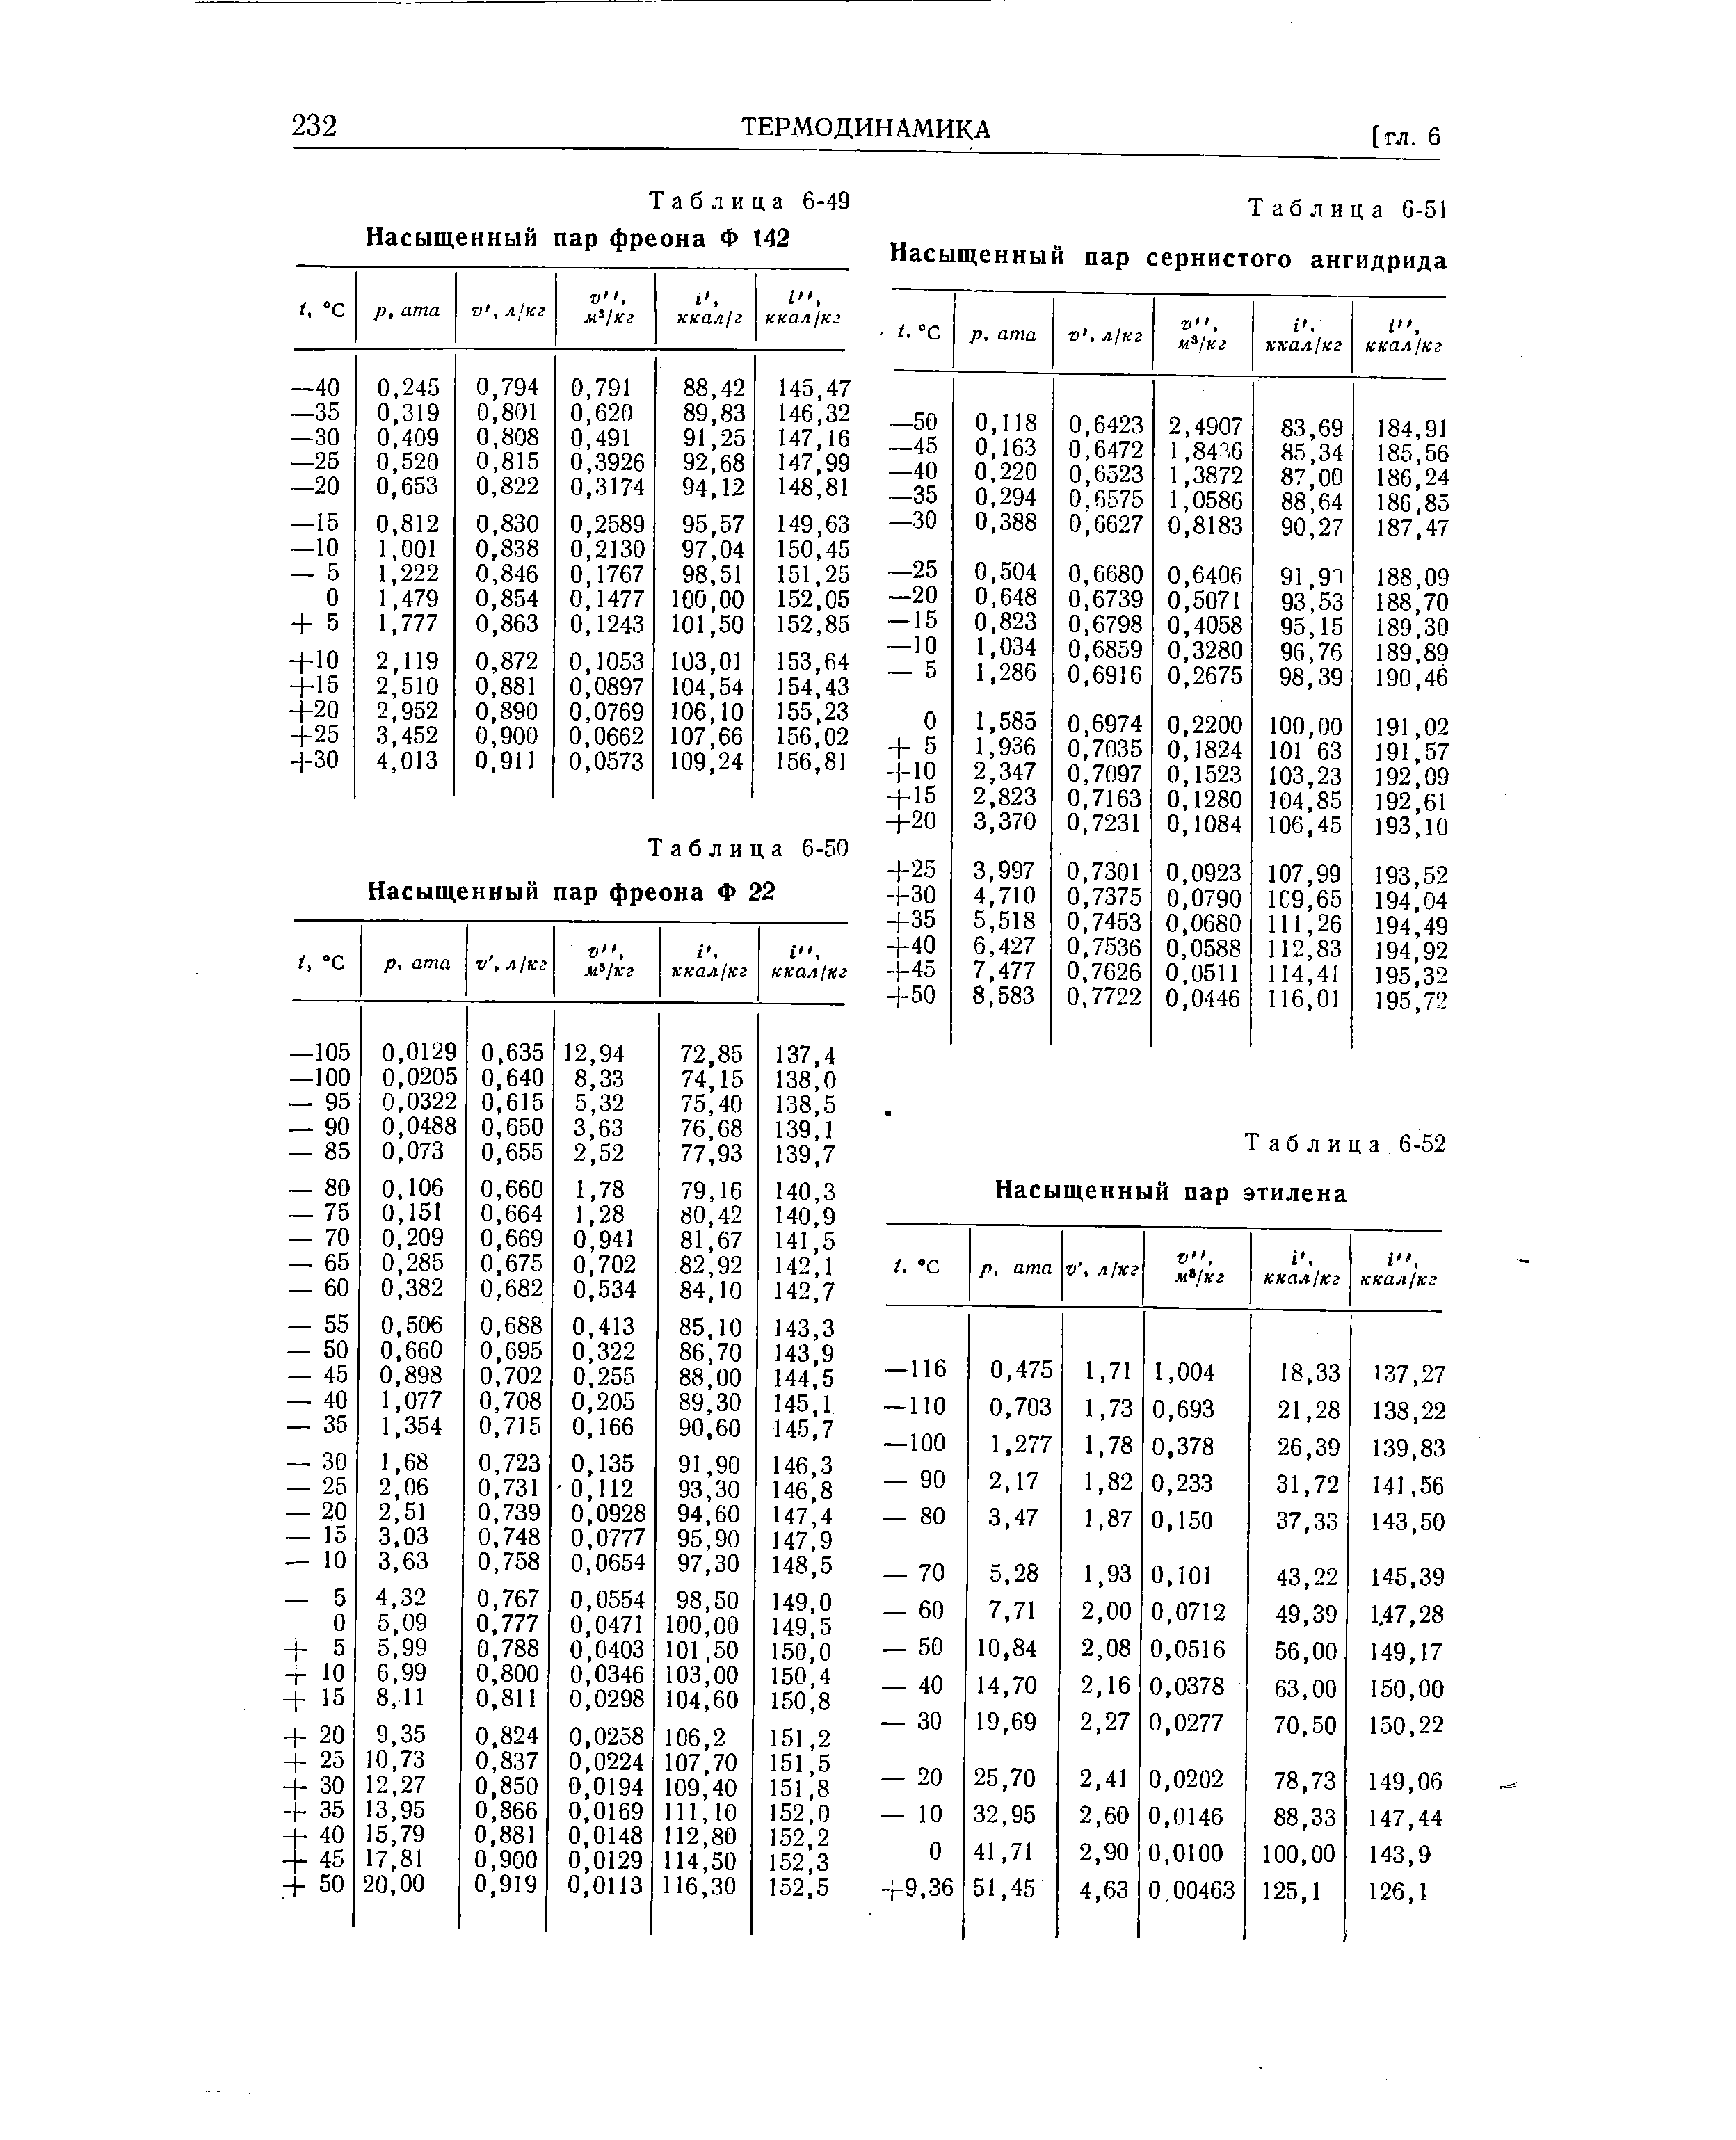 Таблица 6-51 Насыщенный пар сернистого ангидрида
